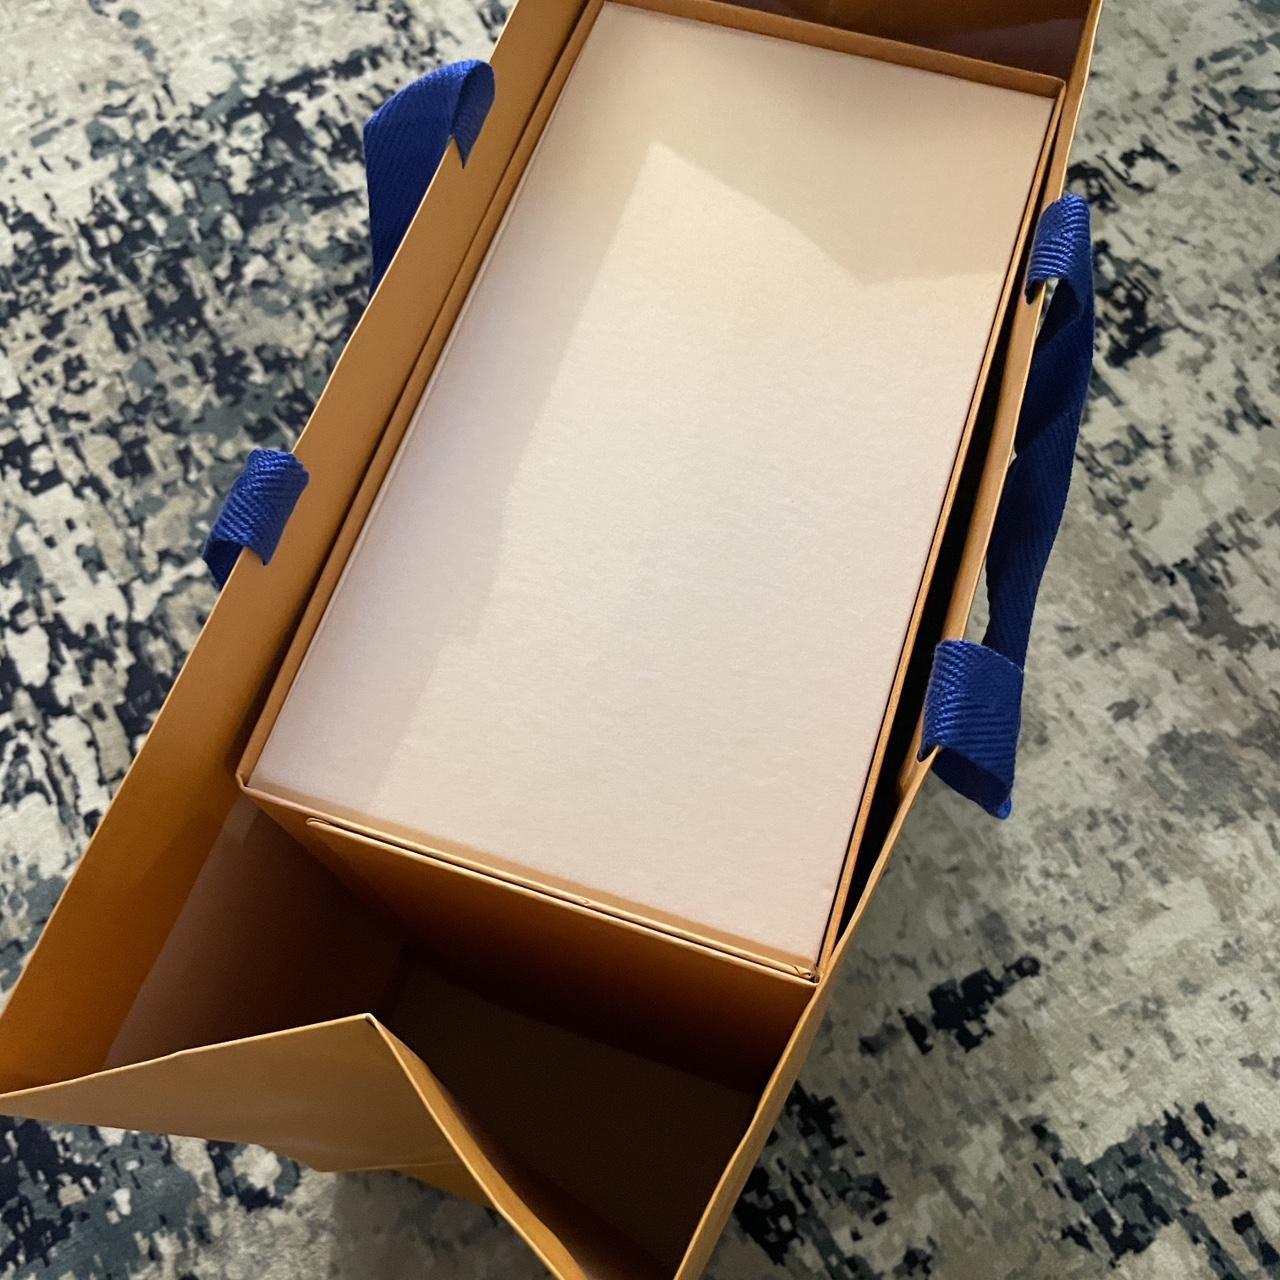 Louis Vuitton empty bag Box 100% authentic empty bag - Depop